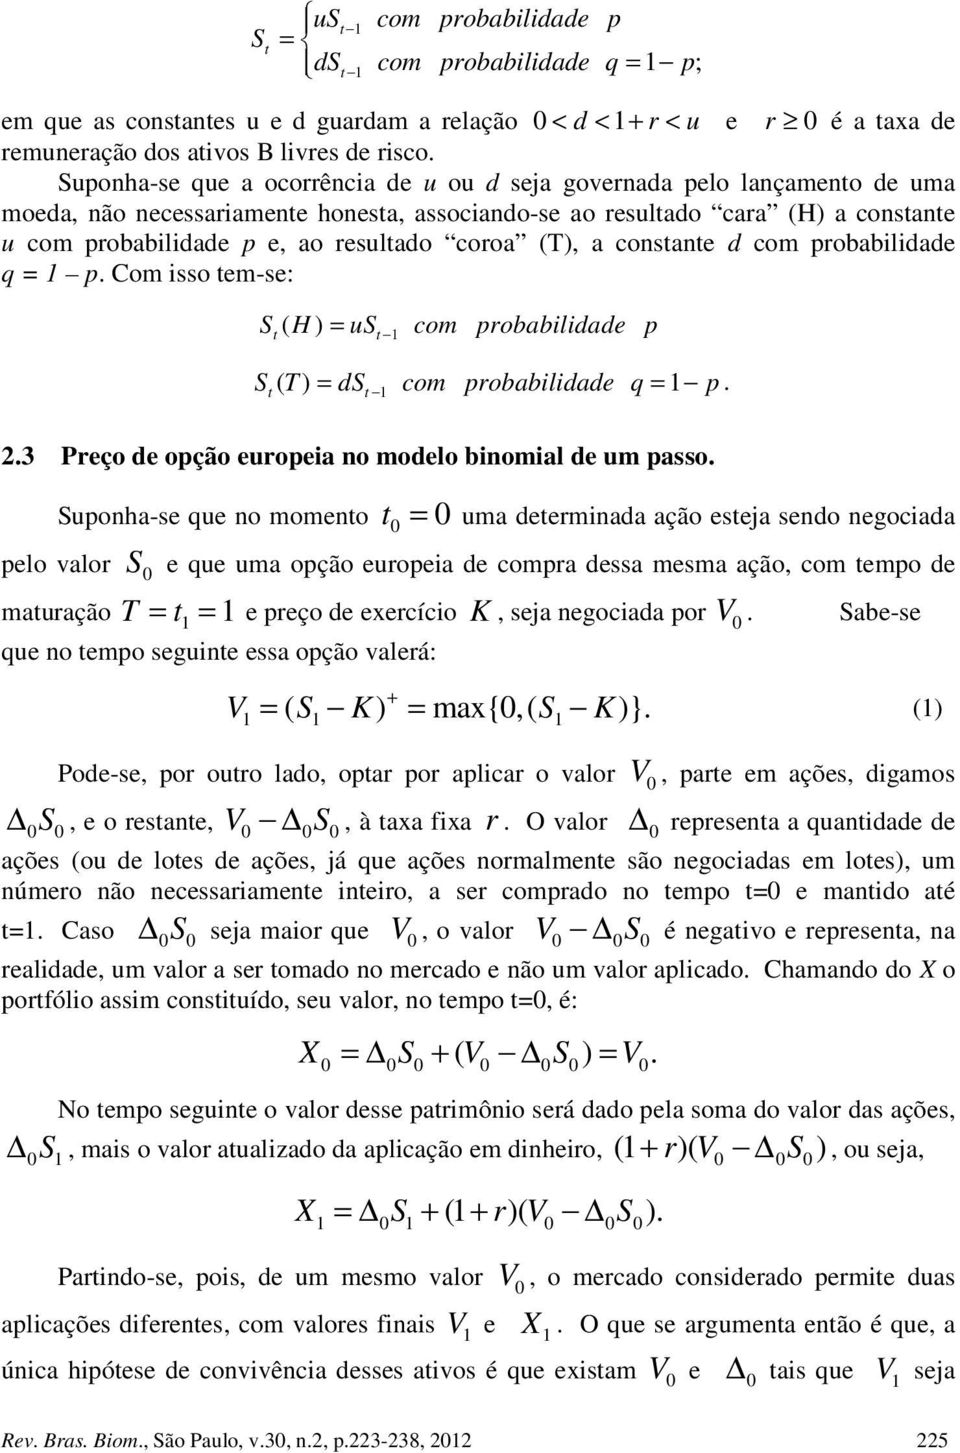 a consane d com probabilidade q = p. Com isso em-se: S ( H ) = us com probabilidade p S ( ) = ds com probabilidade q = p. 2.3 Preço de opção europeia no modelo binomial de um passo.